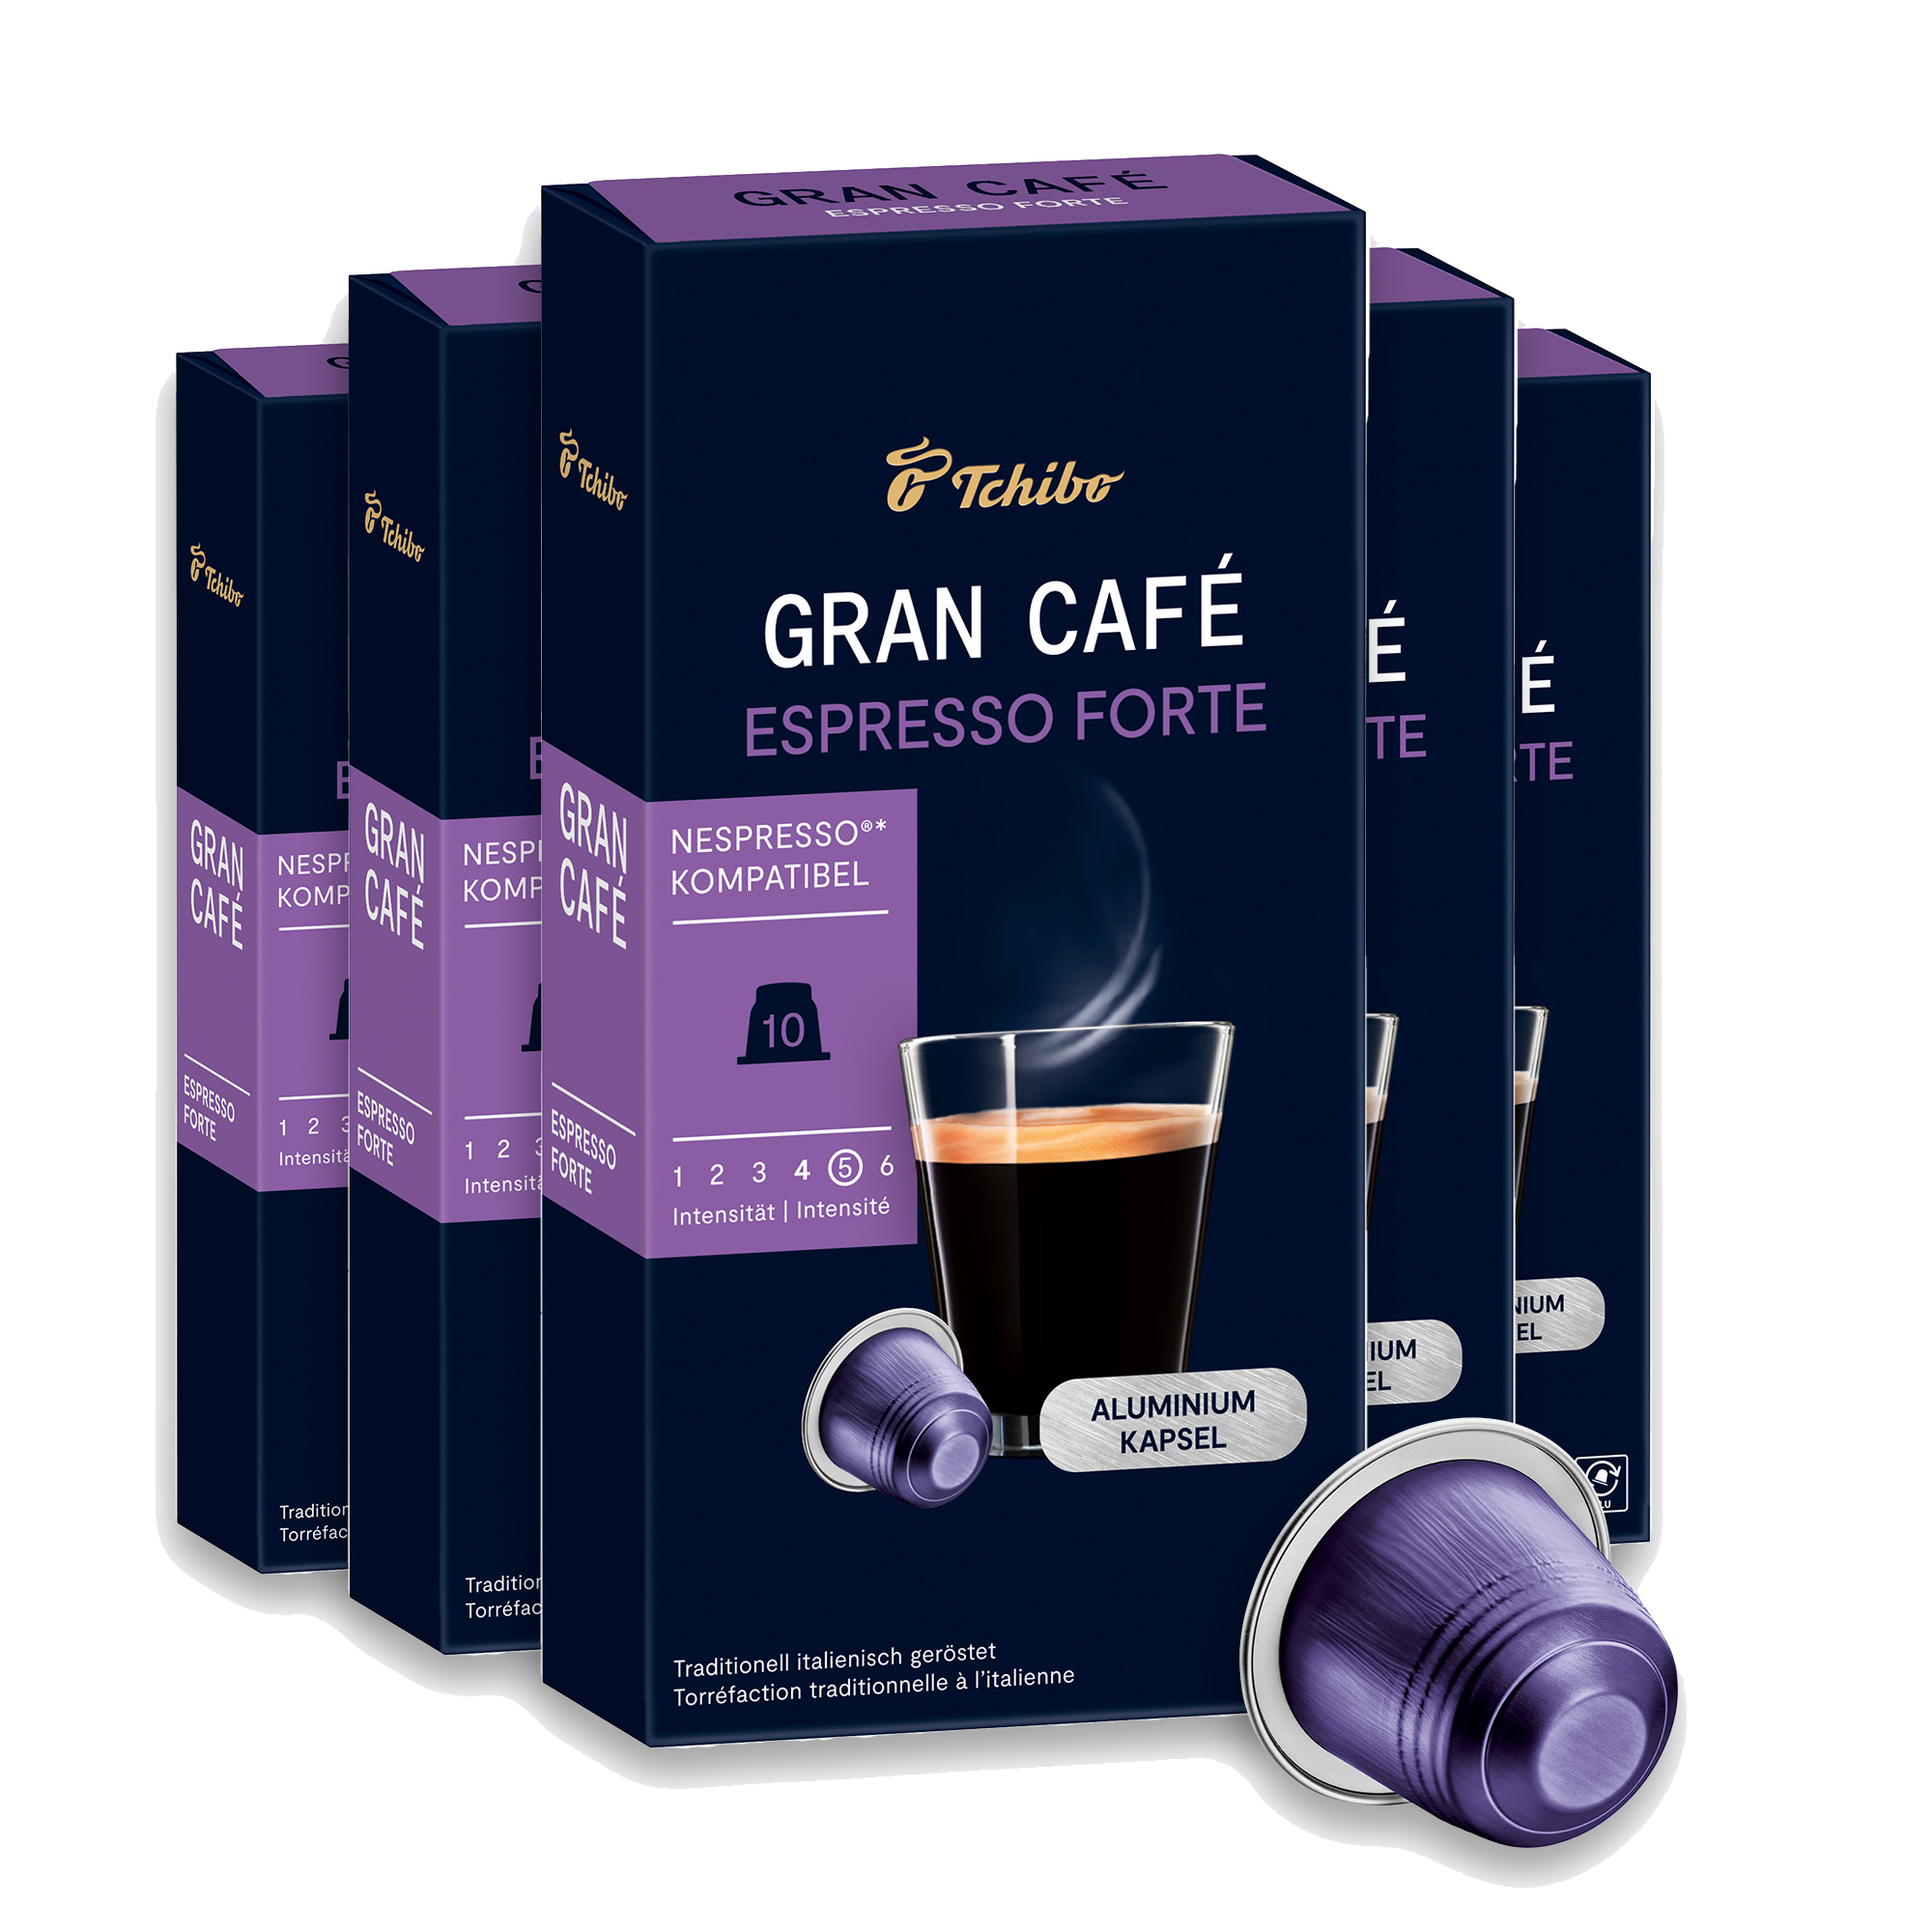 Gran Café Espresso Forte